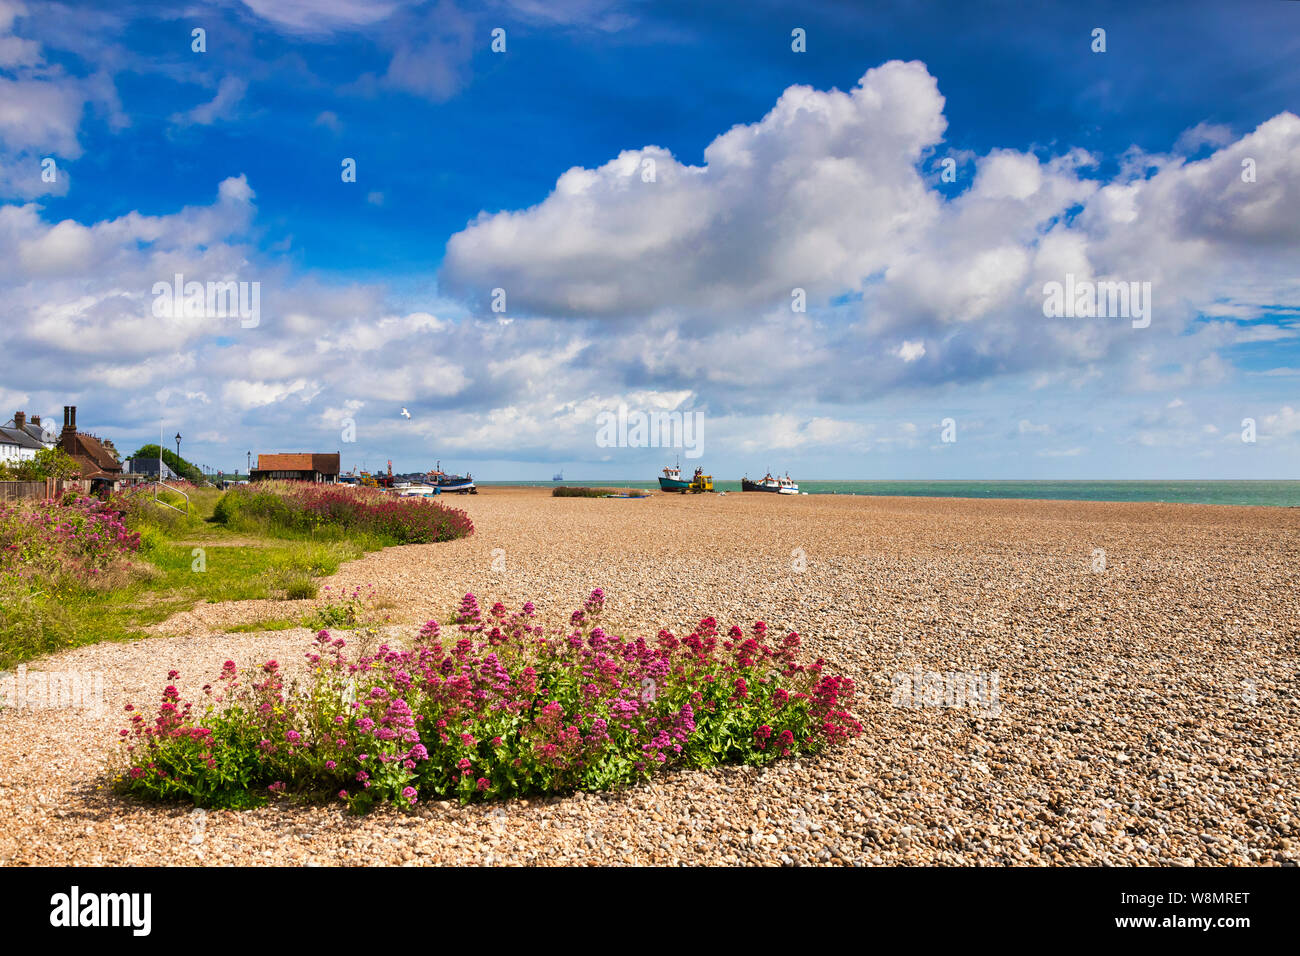 16 Juin 2019 : Aldeburgh, Suffolk, UK - la plage, couverte de bardeau, et des fleurs sauvages, sur une belle journée d'été, ciel bleu et nuages blancs. Banque D'Images